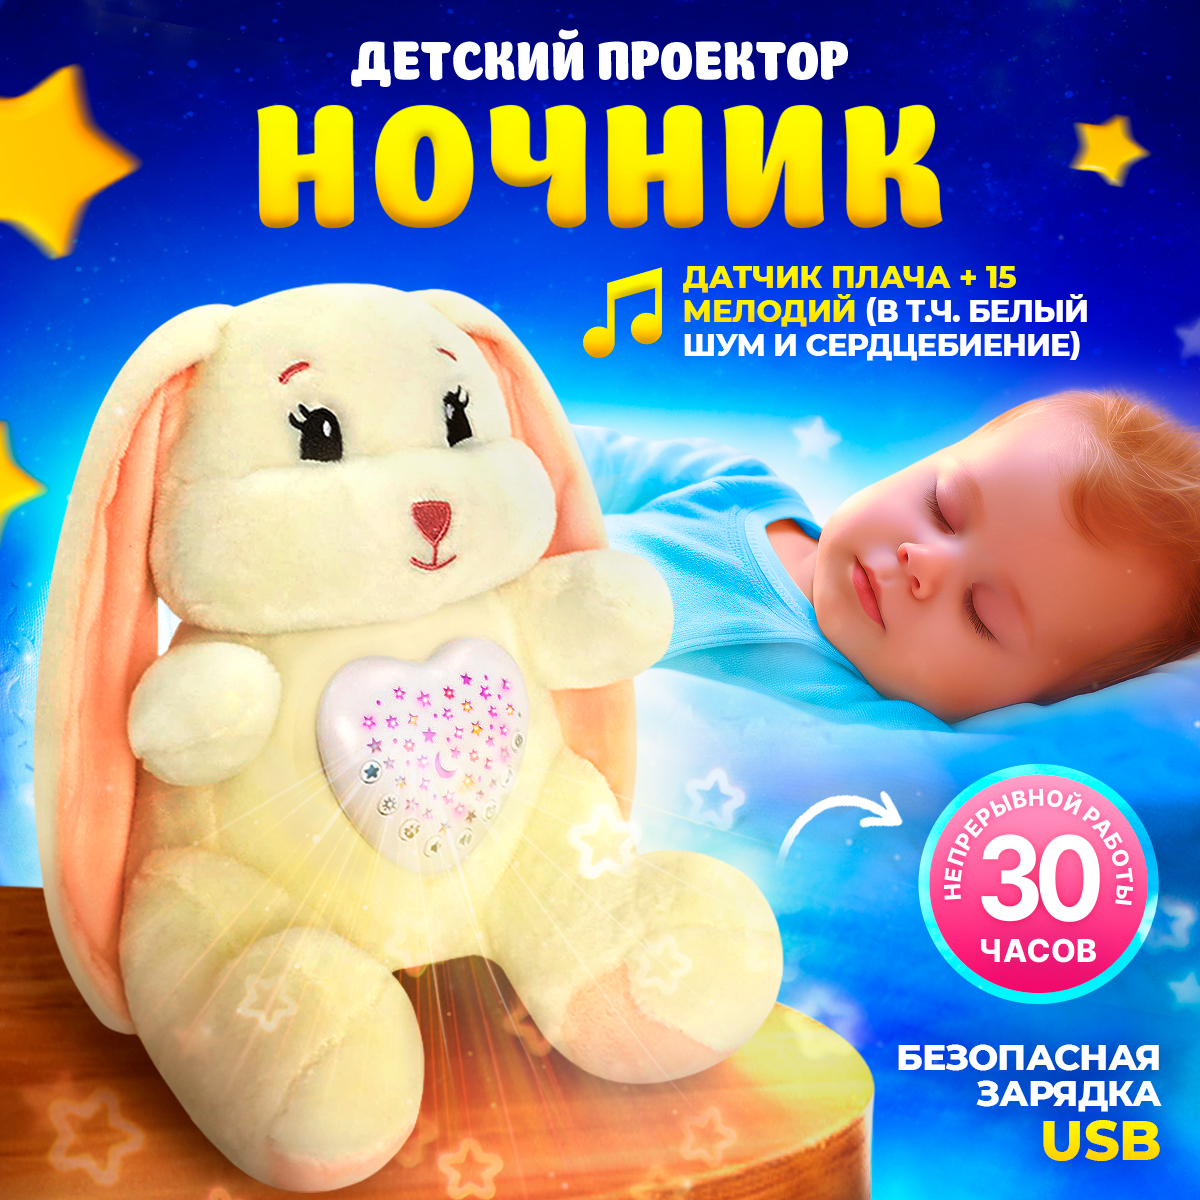 Ночник детский babypolis мягкая игрушка с проектором белым шумом и датчиком плача игрушка мягкая со звуком диносити ночник тира dinonight01